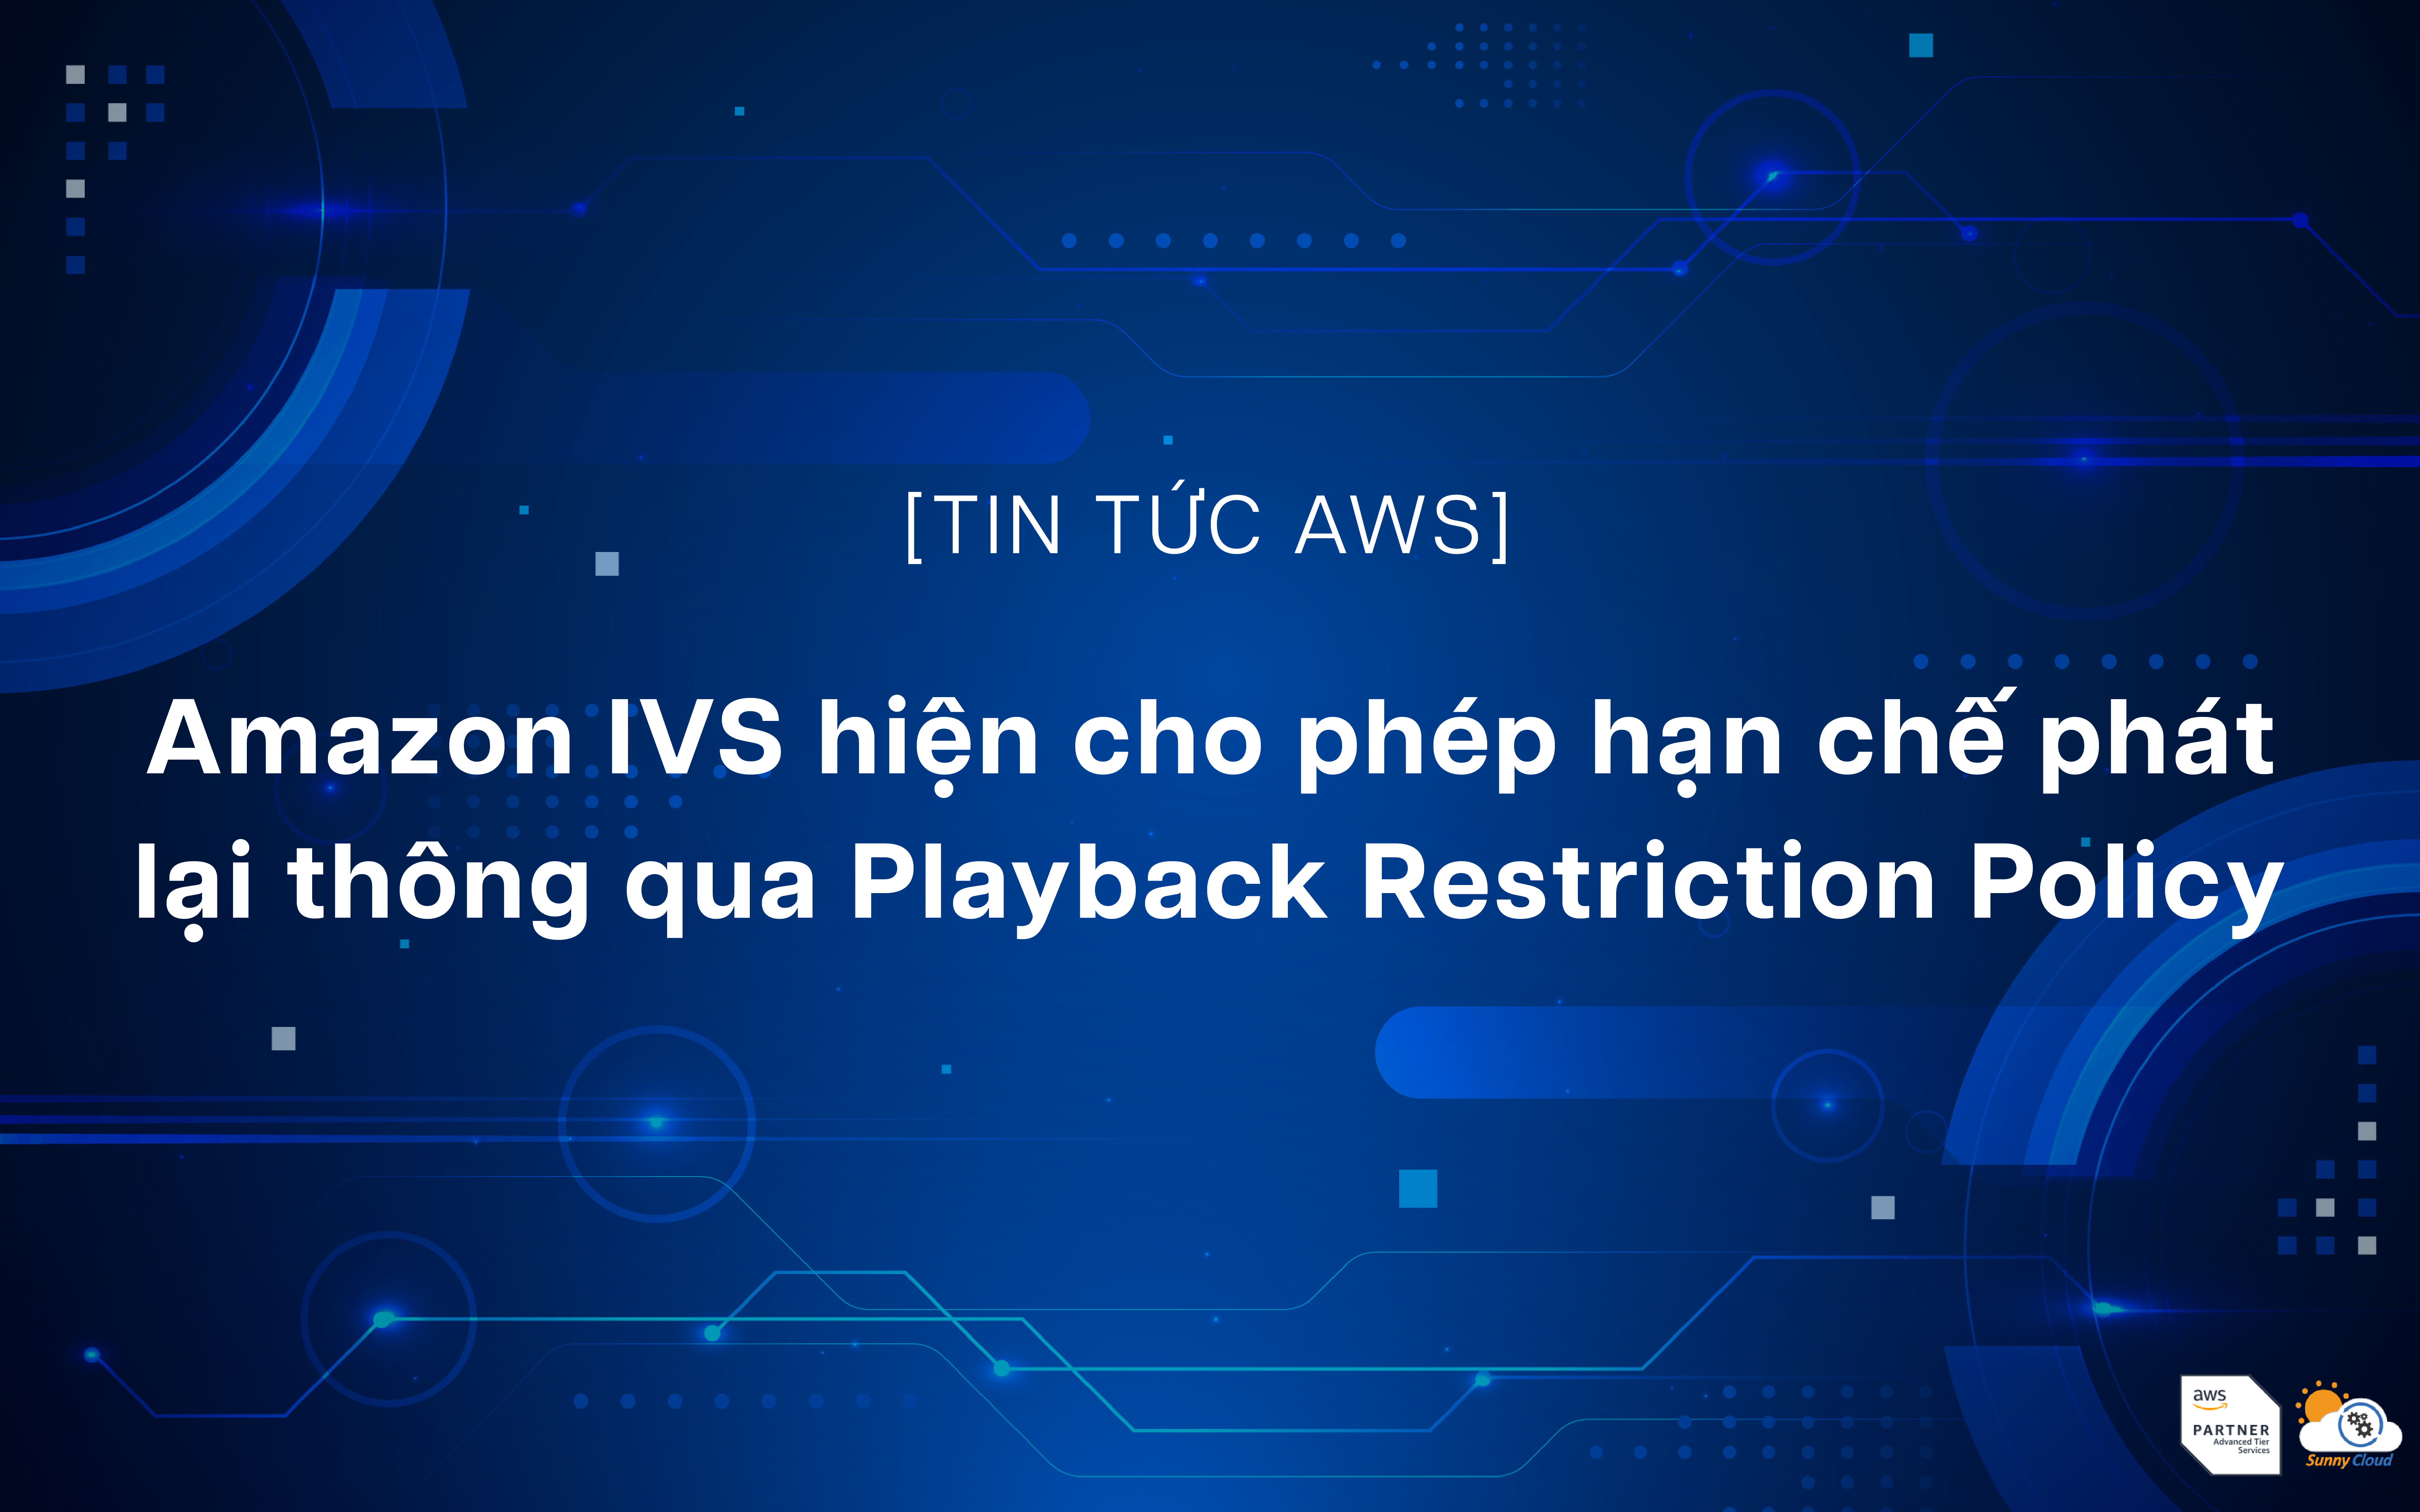 Amazon IVS hiện cho phép hạn chế phát lại thông qua Playback Restriction Policy